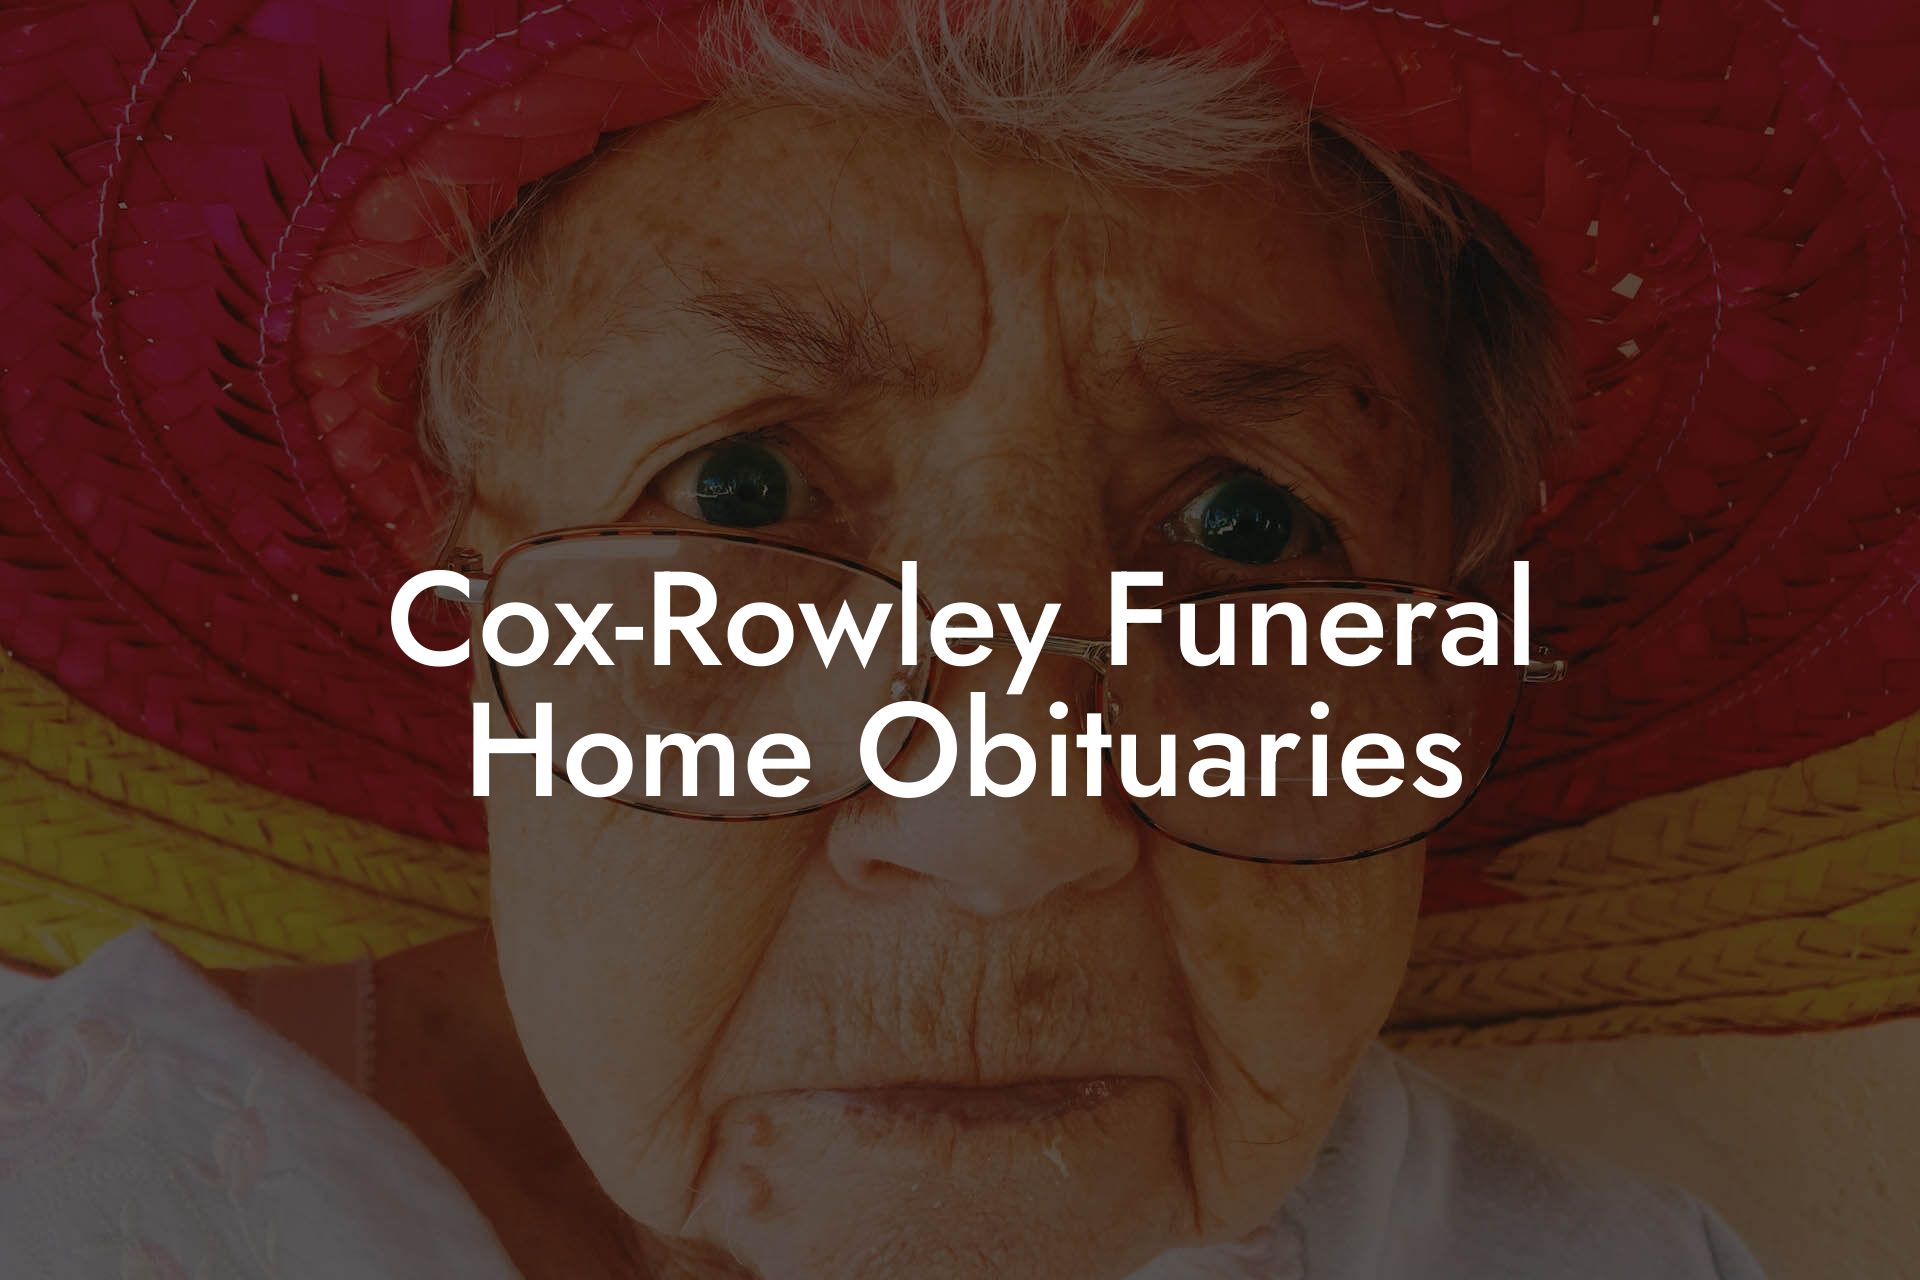 Cox-Rowley Funeral Home Obituaries